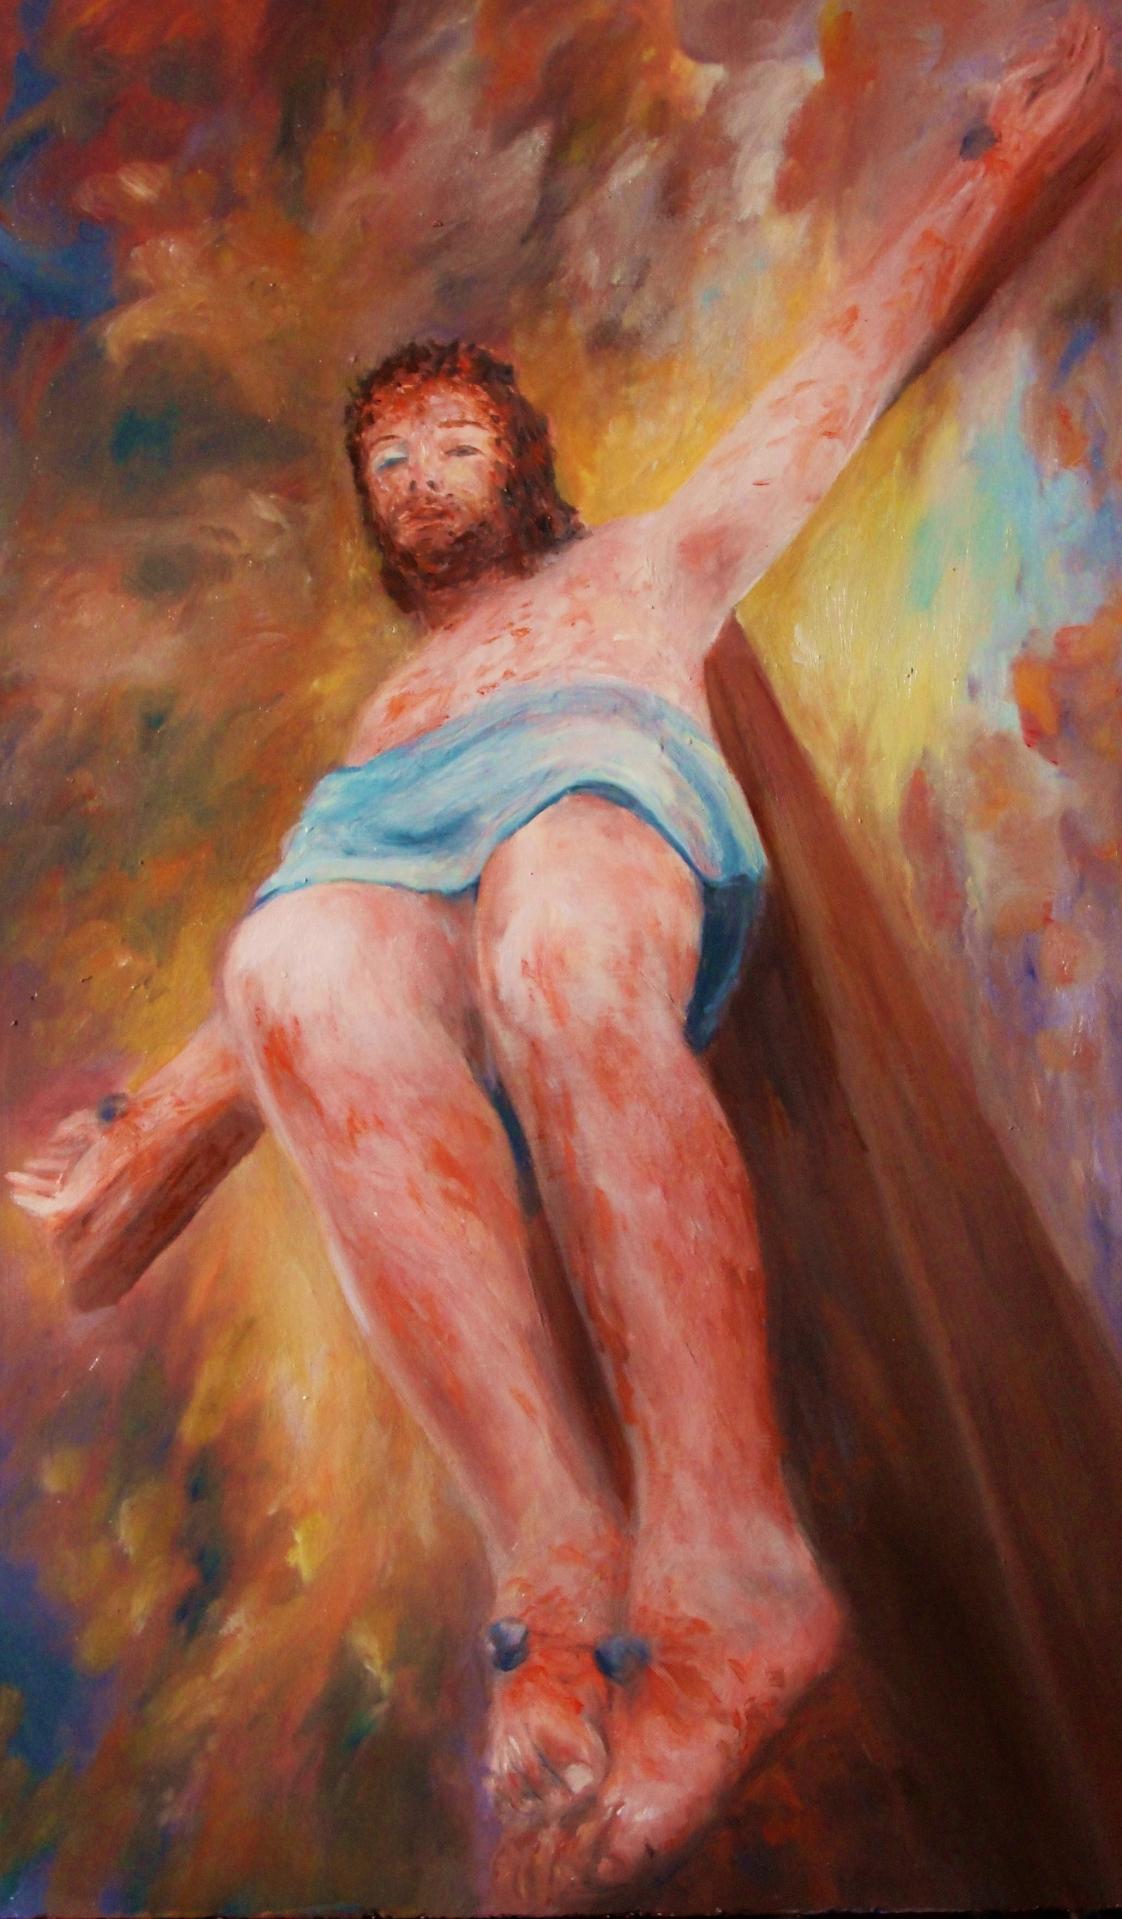 Christ en croix peinture d art sacre de jean joseph chevalier